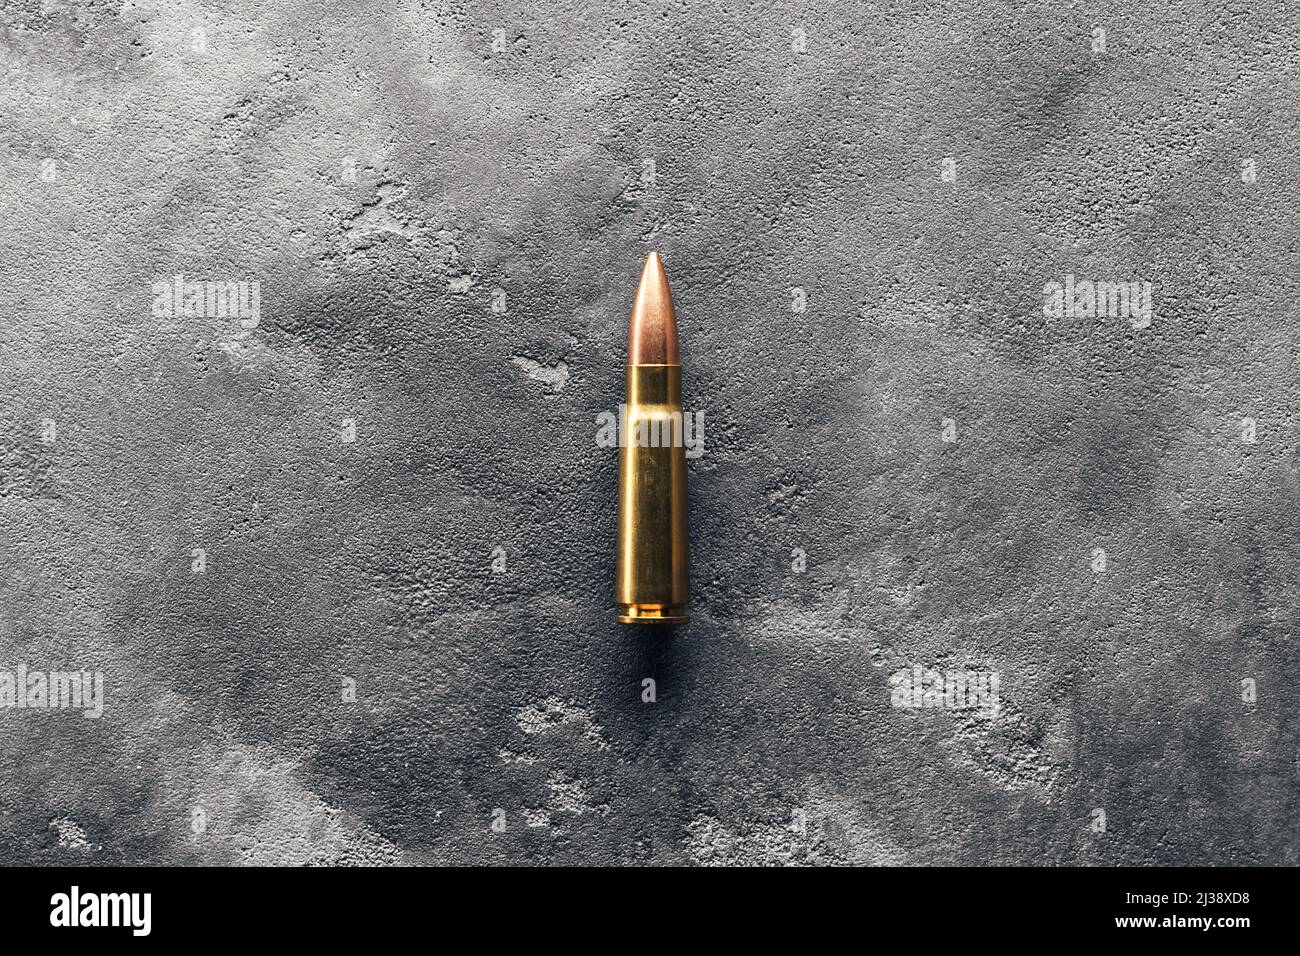 Puce sur fond gris. Cartouche calibre 7,62 pour fusil d'assaut Kalashnikov Banque D'Images